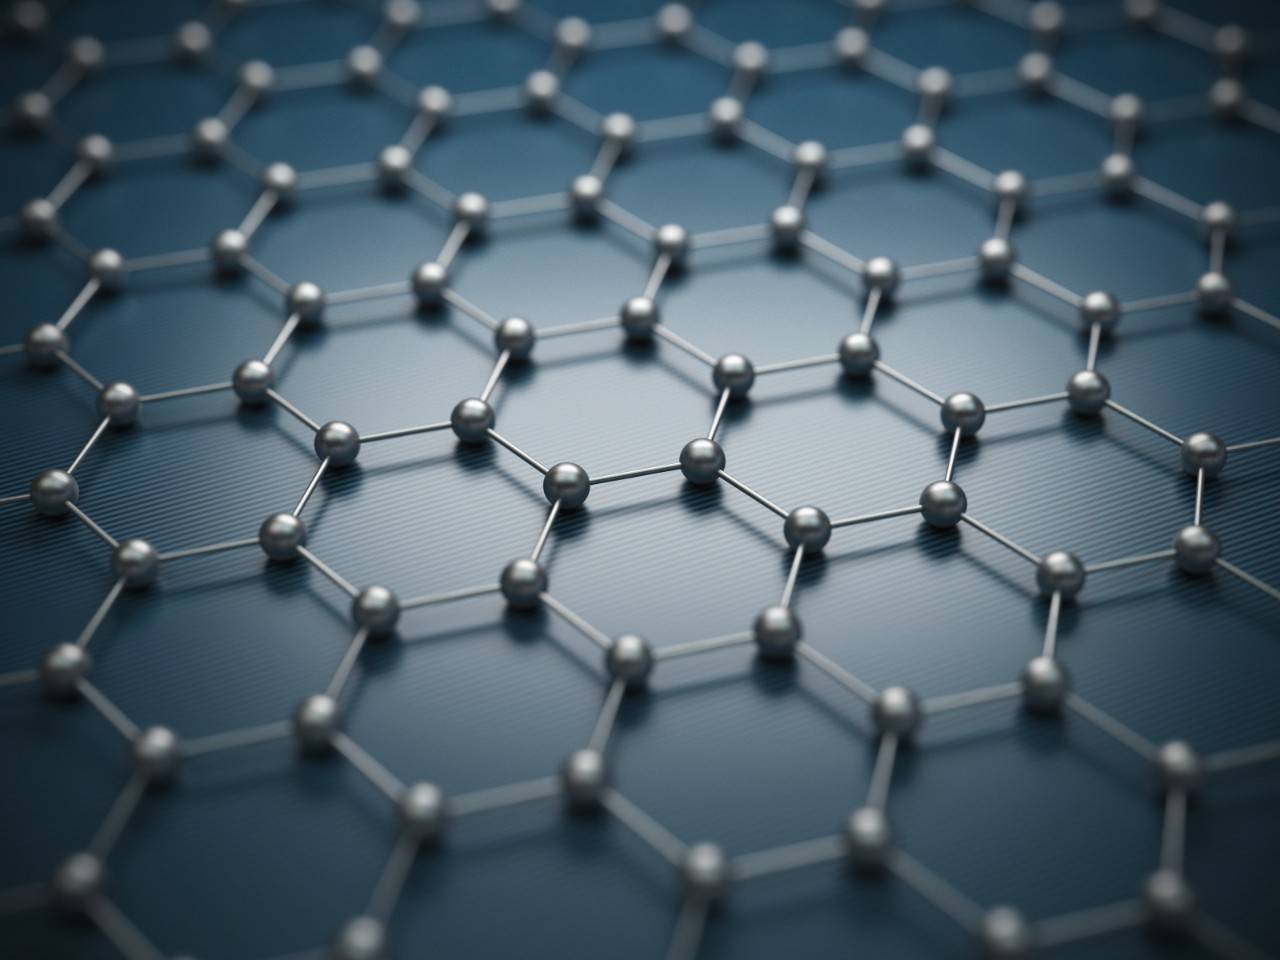 moléculas de grafeno, un material innovador